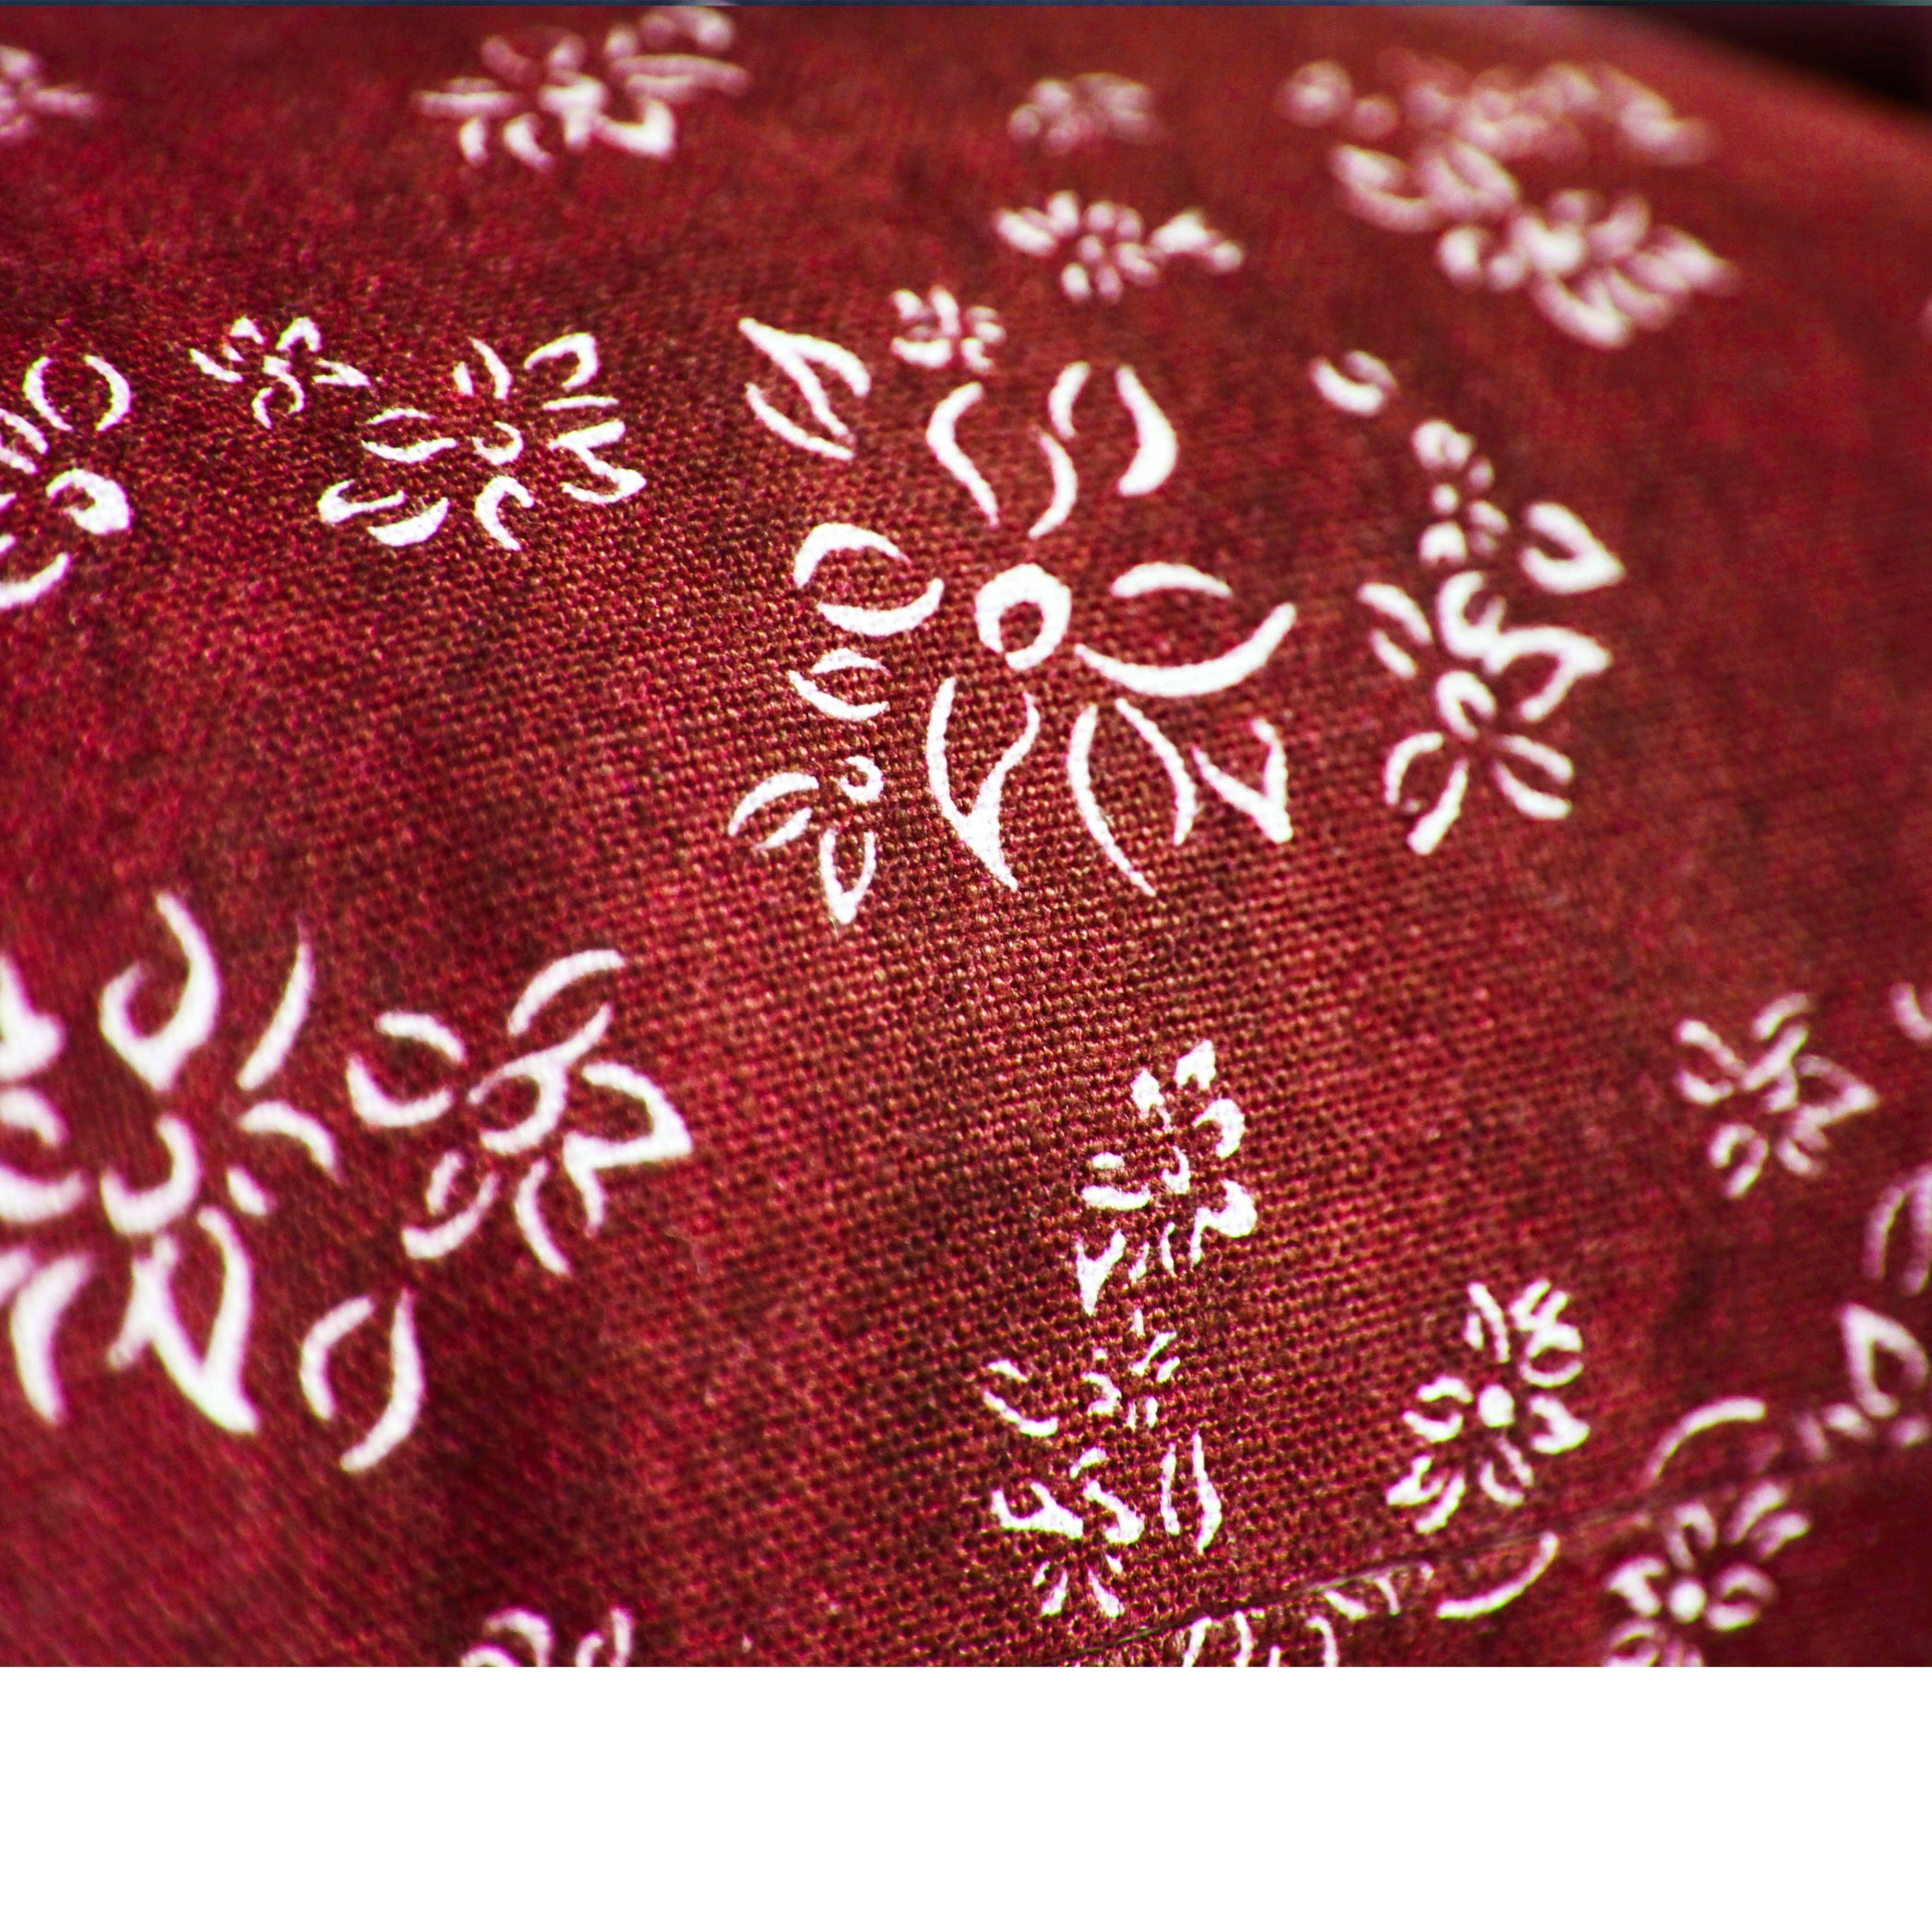 Heavy Linen Falling Flower Cushion in Full Field Claret Red, 50cm x 50cm